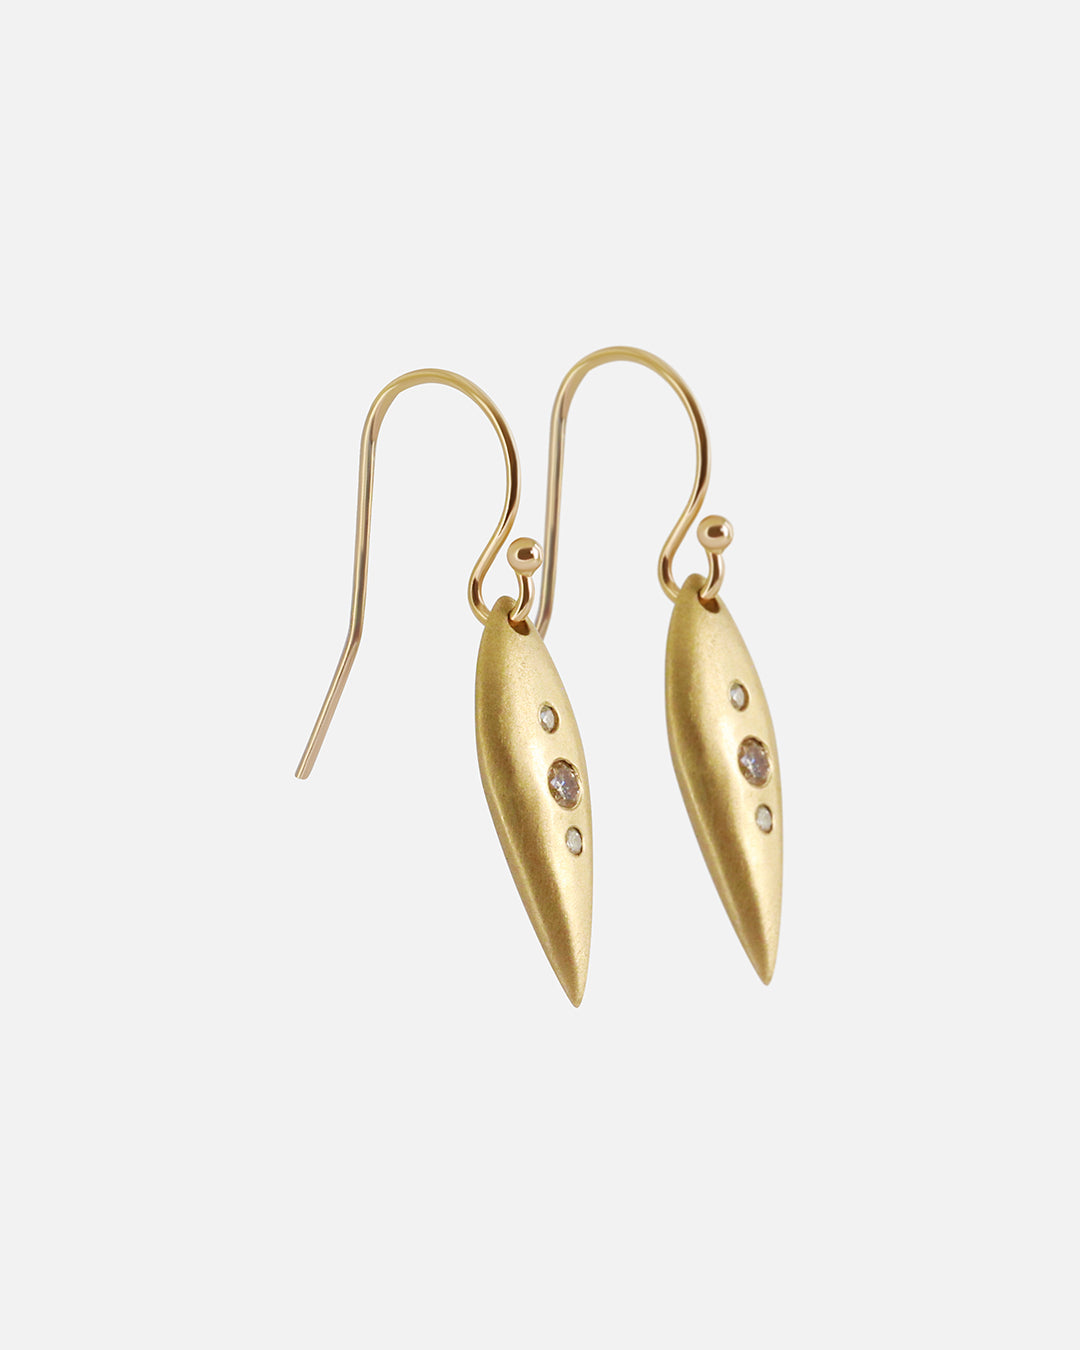 Pod Earrings / 3 Diamonds By Tricia Kirkland in earrings Category